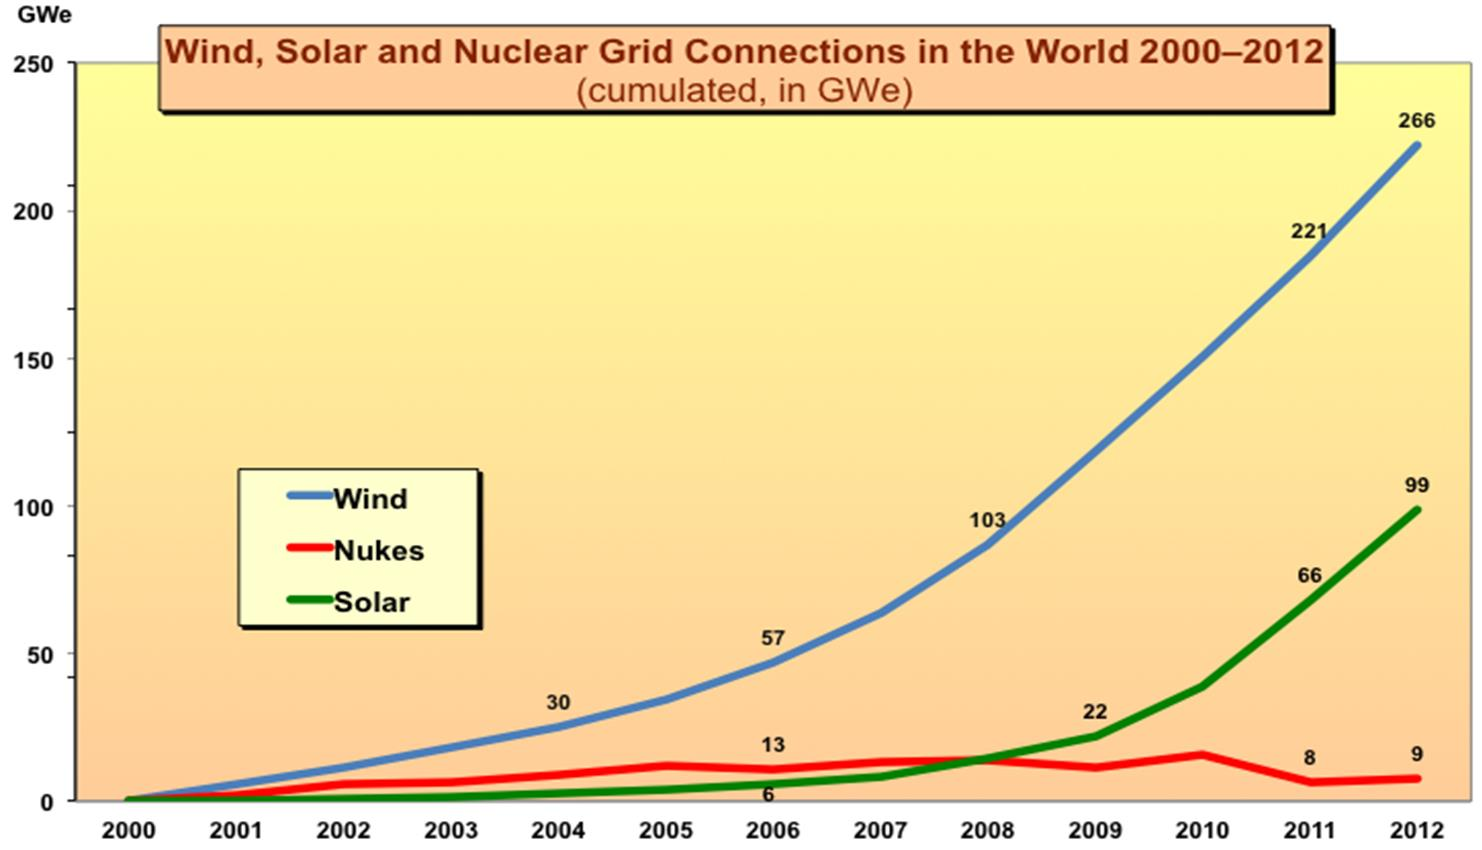 Dünya genelinde 2000 2012 yılları arasında kurulumu gerçekleştirilen Rüzgar, Güneş ve Nükleer Kaynaklı Elektrik Santrallerinin Kapasitelerinin yıllar içinde